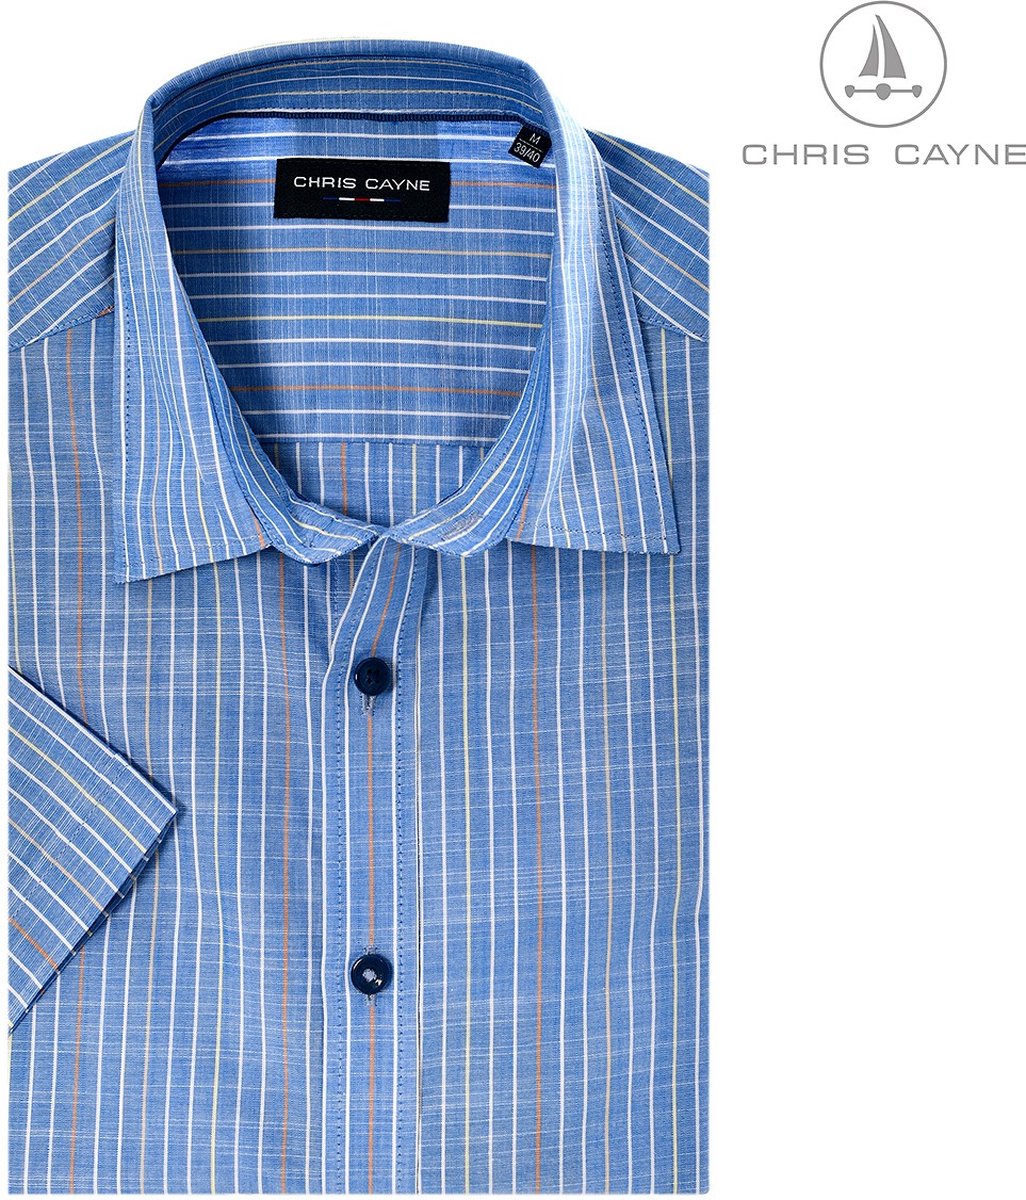 Chris Cayne heren blouse - overhemd heren - korte mouwen - blauwe dunne streep - 2453 - maat M